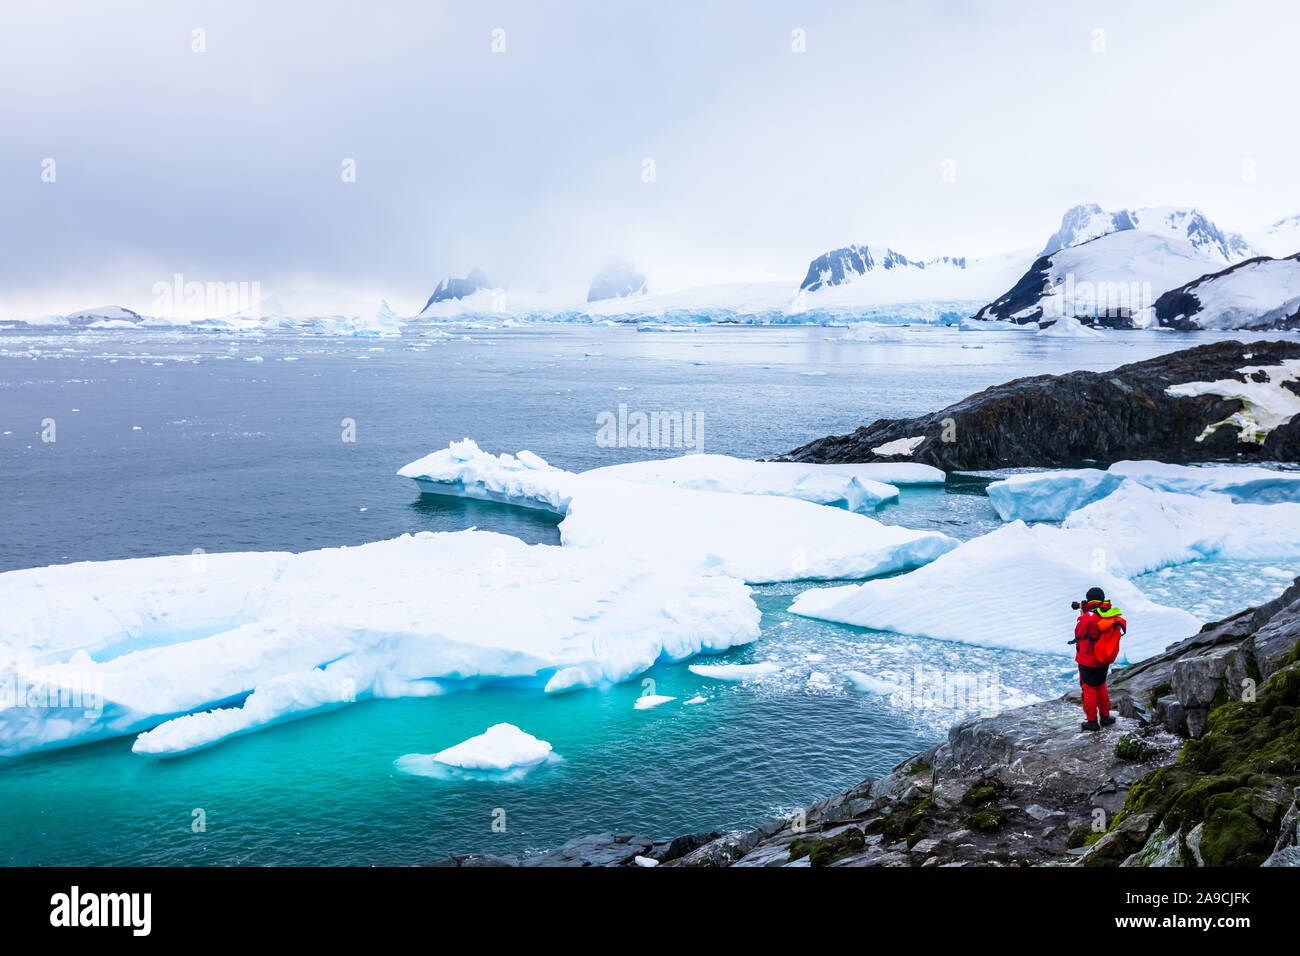 Turista tomando fotos del impresionante paisaje helado en la Antártida con témpanos de hielo, nieve, montañas y glaciares, la naturaleza hermosa en la Península Antártica w Foto de stock